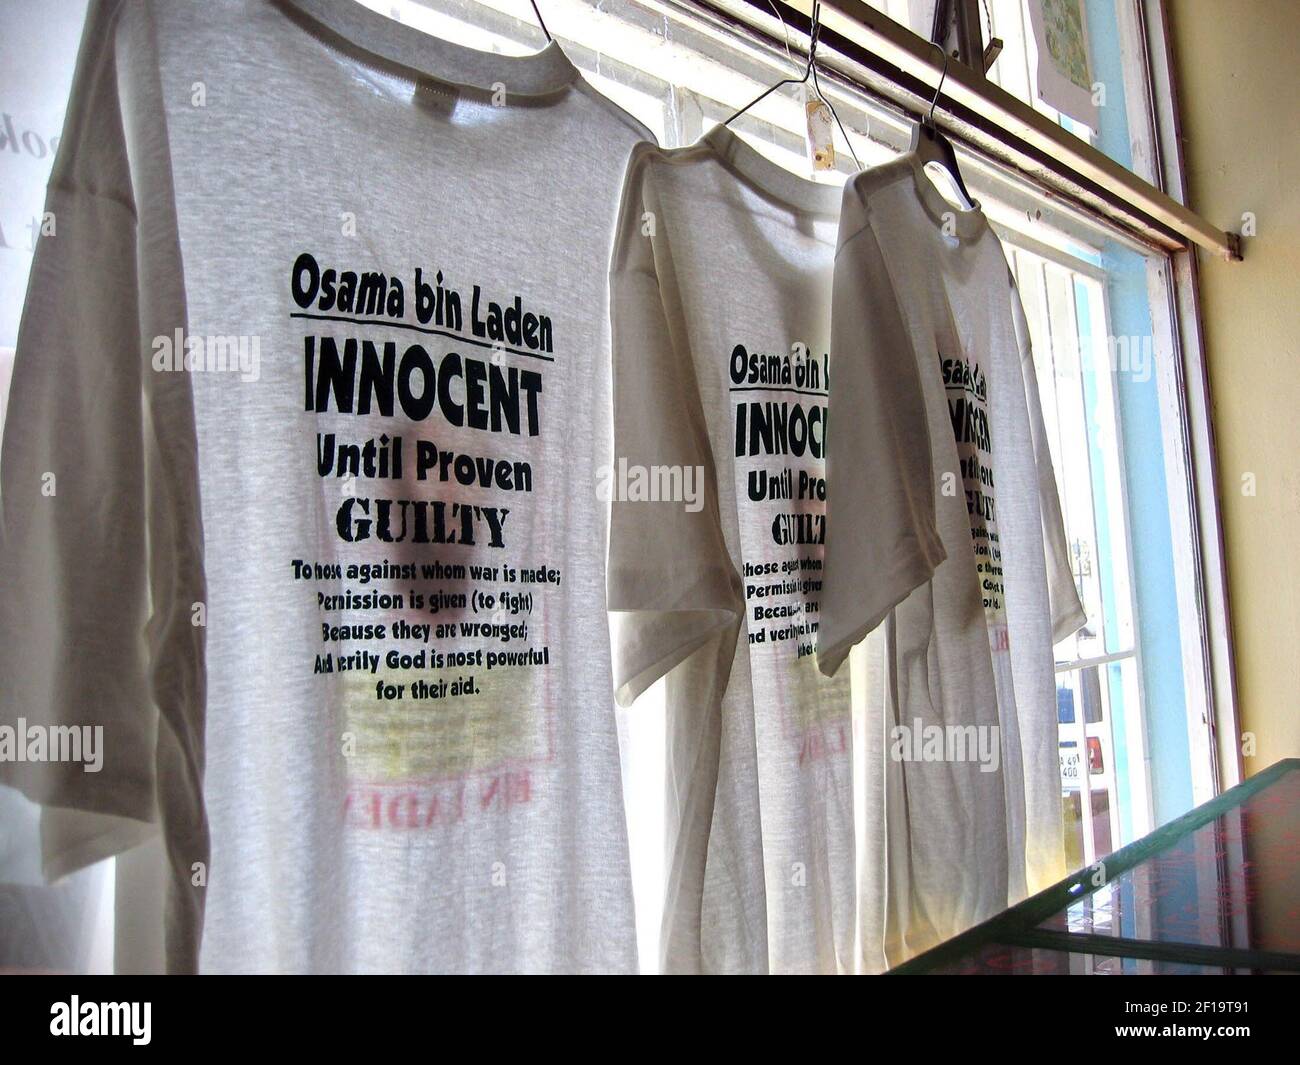 NOTICIAS DEL MUNDO DE KRT SLUGED: TERROR-SUDÁFRICA KRT FOTOGRAFÍA DE SUDARSAN RAGHAVAN/KRT (agosto de 1) camisetas de Osama Bin Laden en exhibición en el Centro de Información de los musulmanes contra la opresión Global en Ciudad del Cabo, Sudáfrica. (Foto de cdm) 2004 Foto de stock